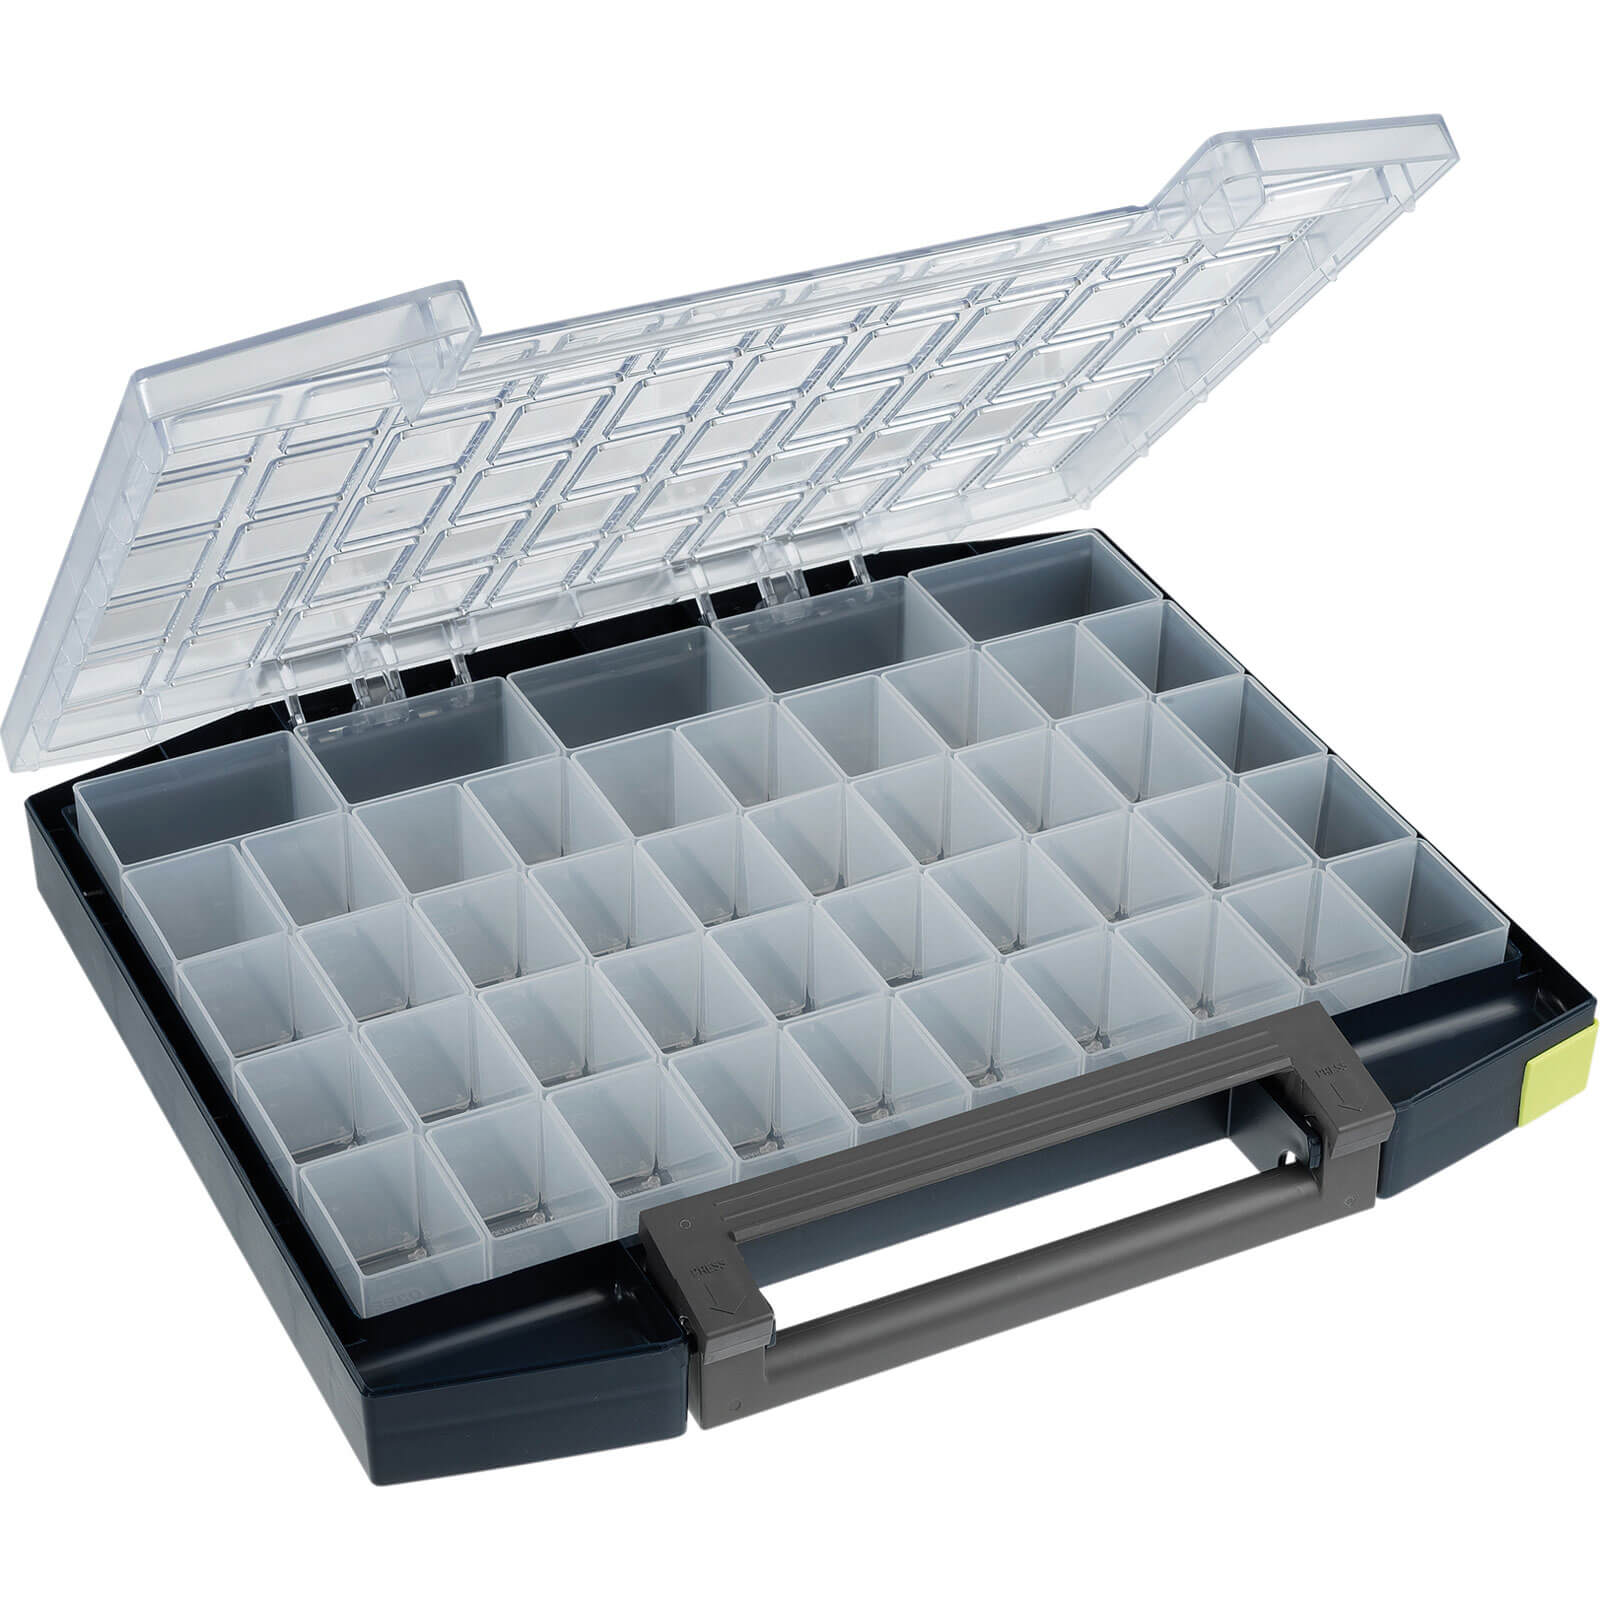 Raaco Boxxser 45 Compartment Pro Organiser Case